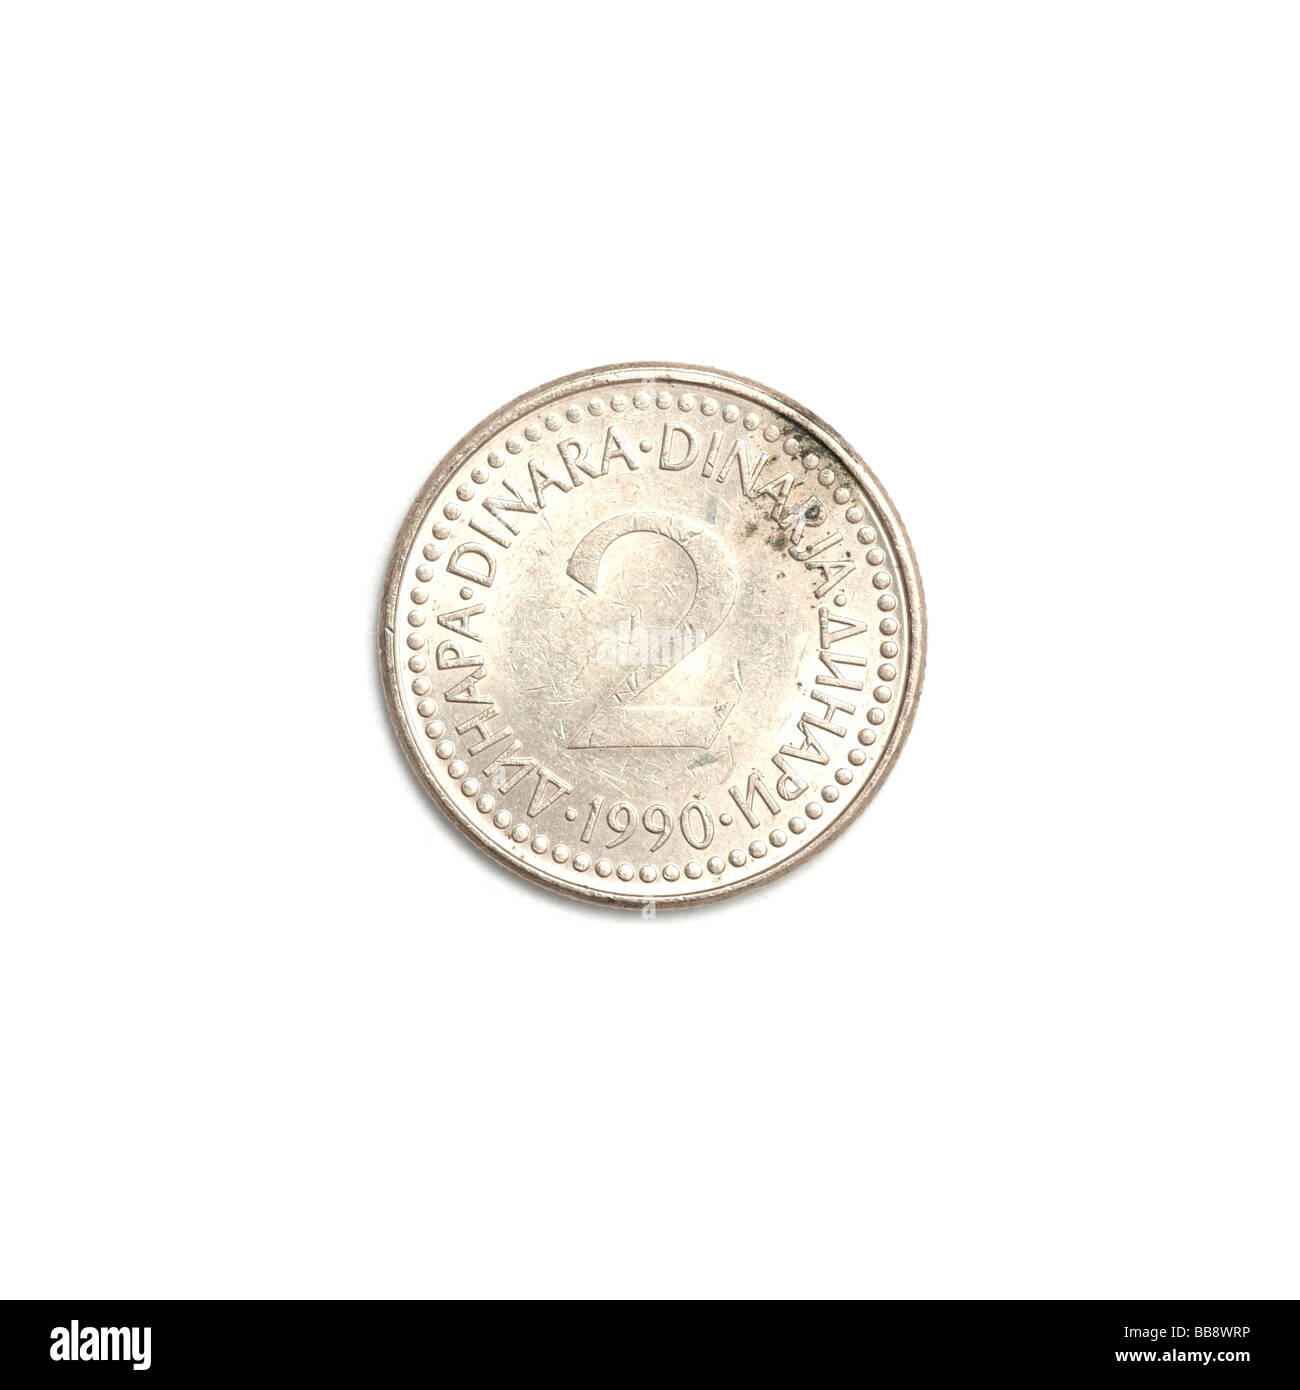 Yugoslavian 2 dinar coin Stock Photo